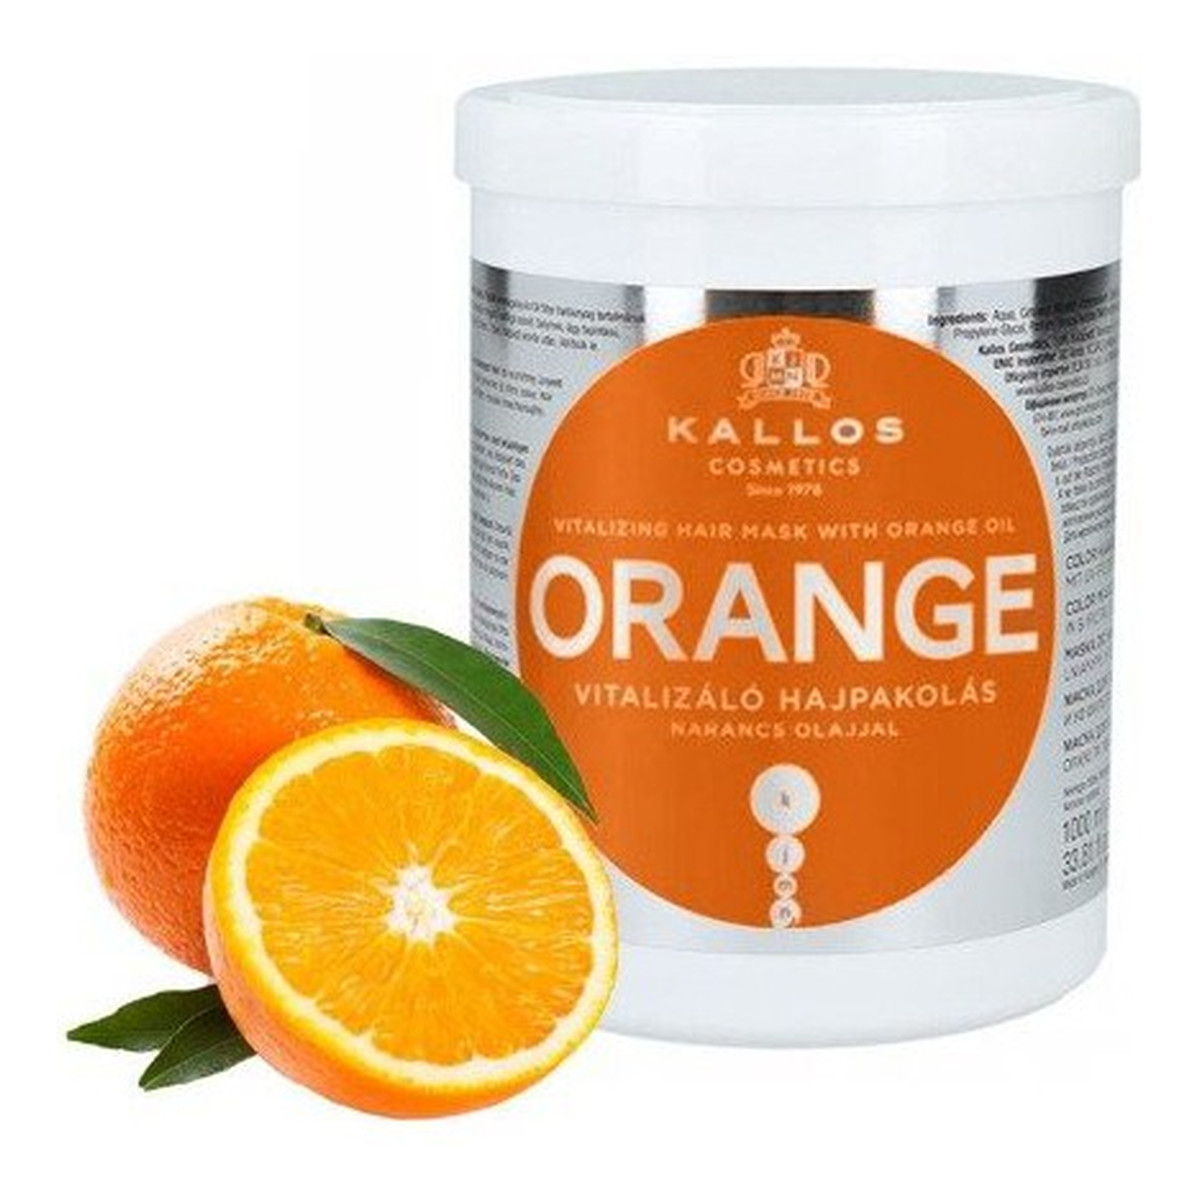 Kallos Orange Maska do włosów rewitalizująca z olejem pomarańczowym 1000ml